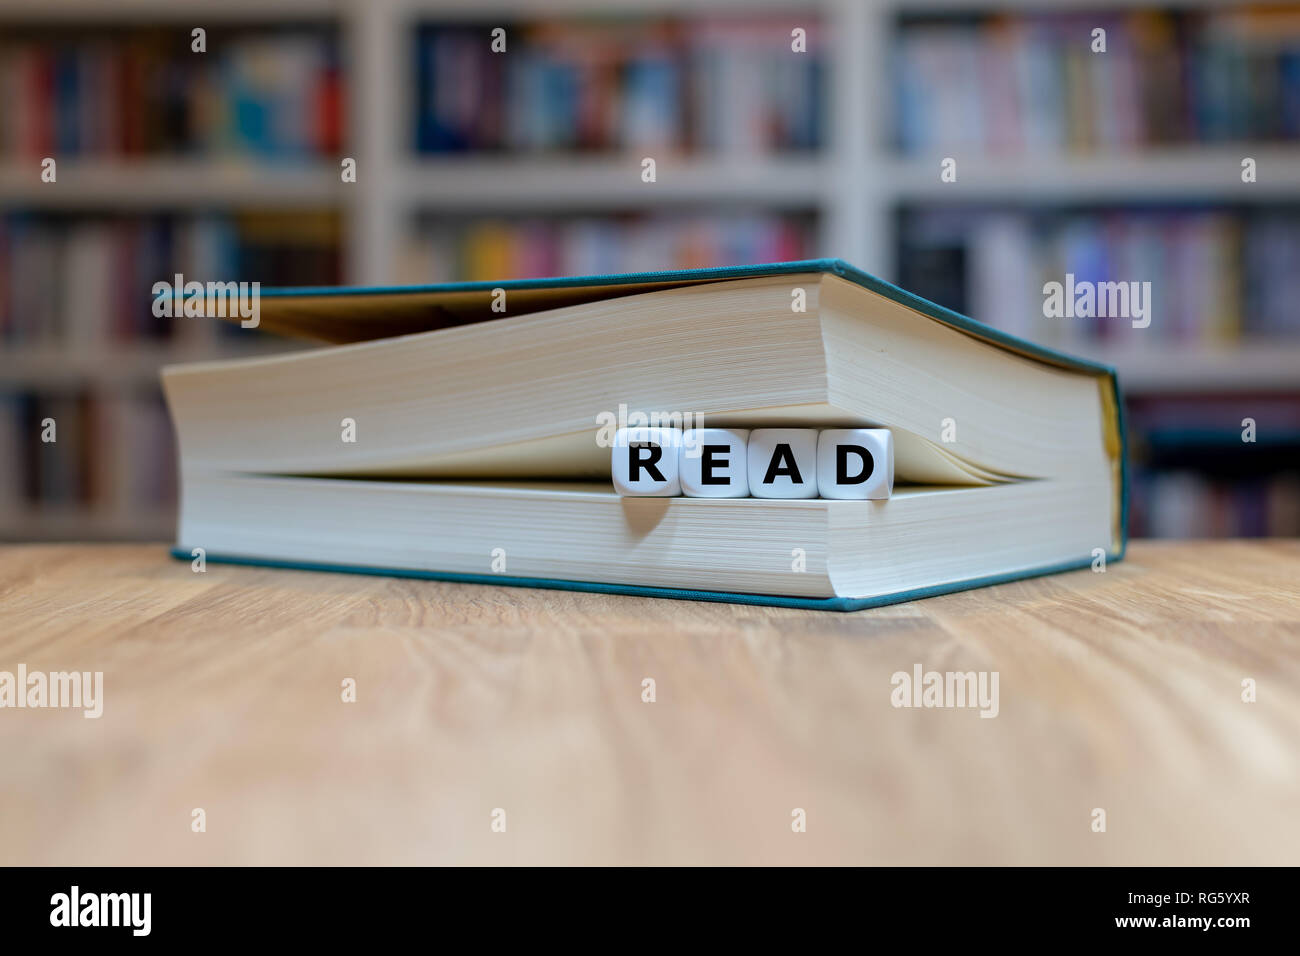 Dadi in una forma del libro la parola 'read'. Libro è sdraiato su una scrivania in legno di fronte a scaffale. Foto Stock